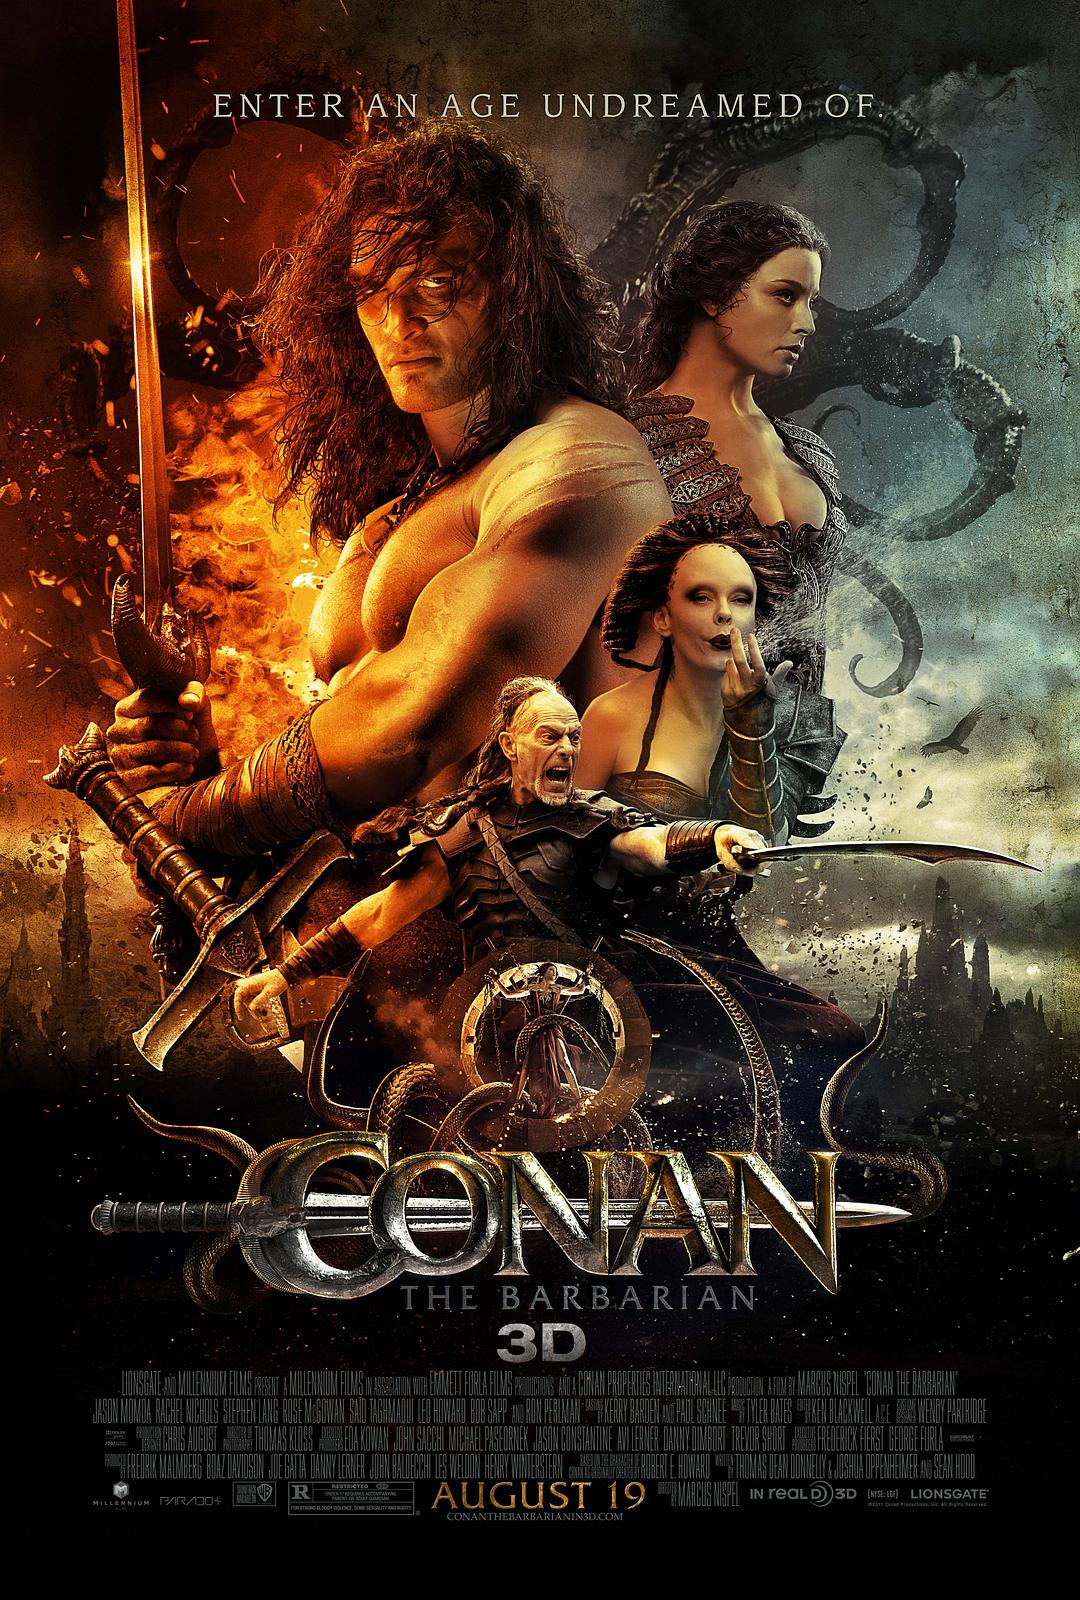 王者之剑.Conan.the.Barbarian.2011.BD3D.1080p.BluRay.REMUX.AVC.DTS-HD.MA.7.1-Asmo 33.00GB